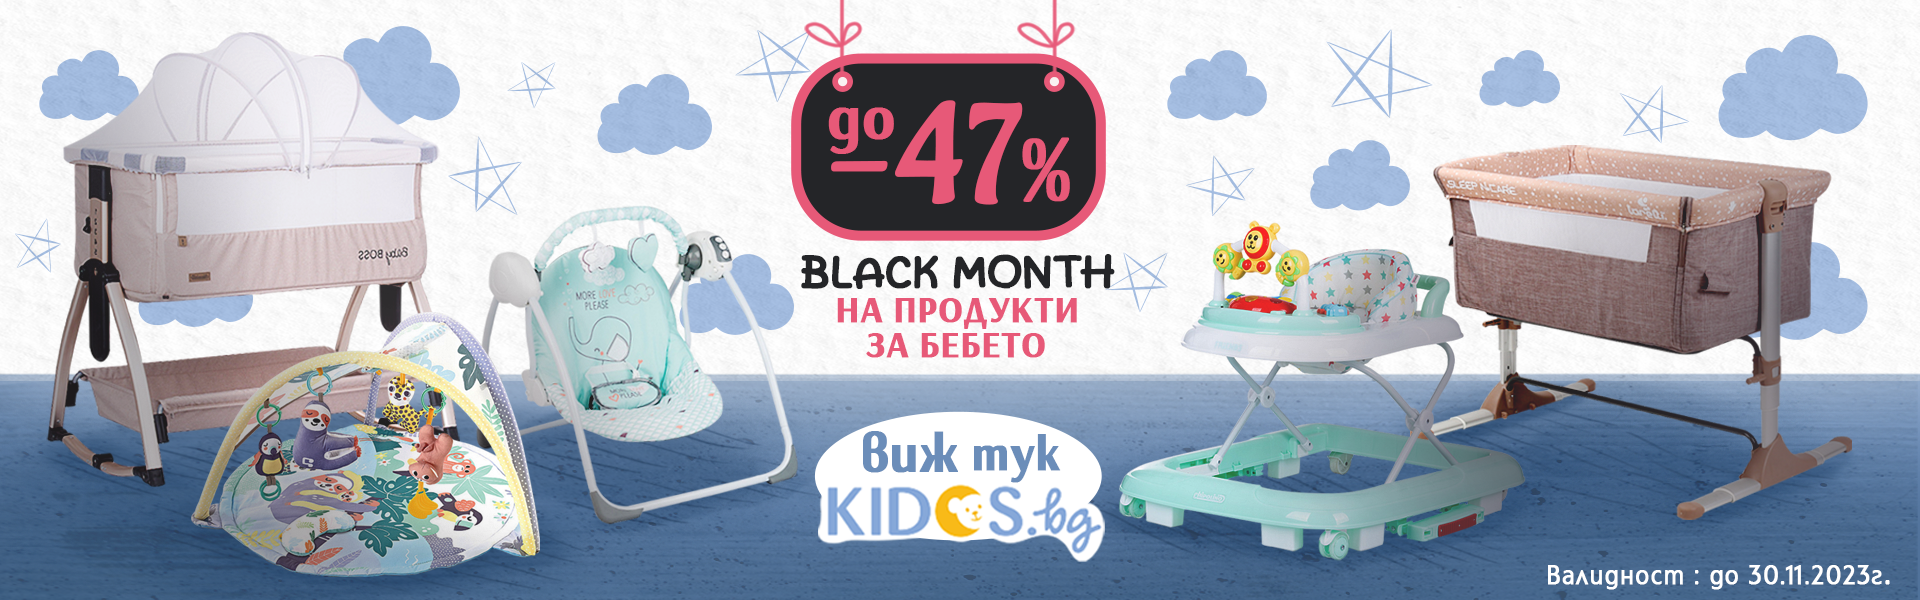 BLACK MONTH - продукти за бебето до -47%